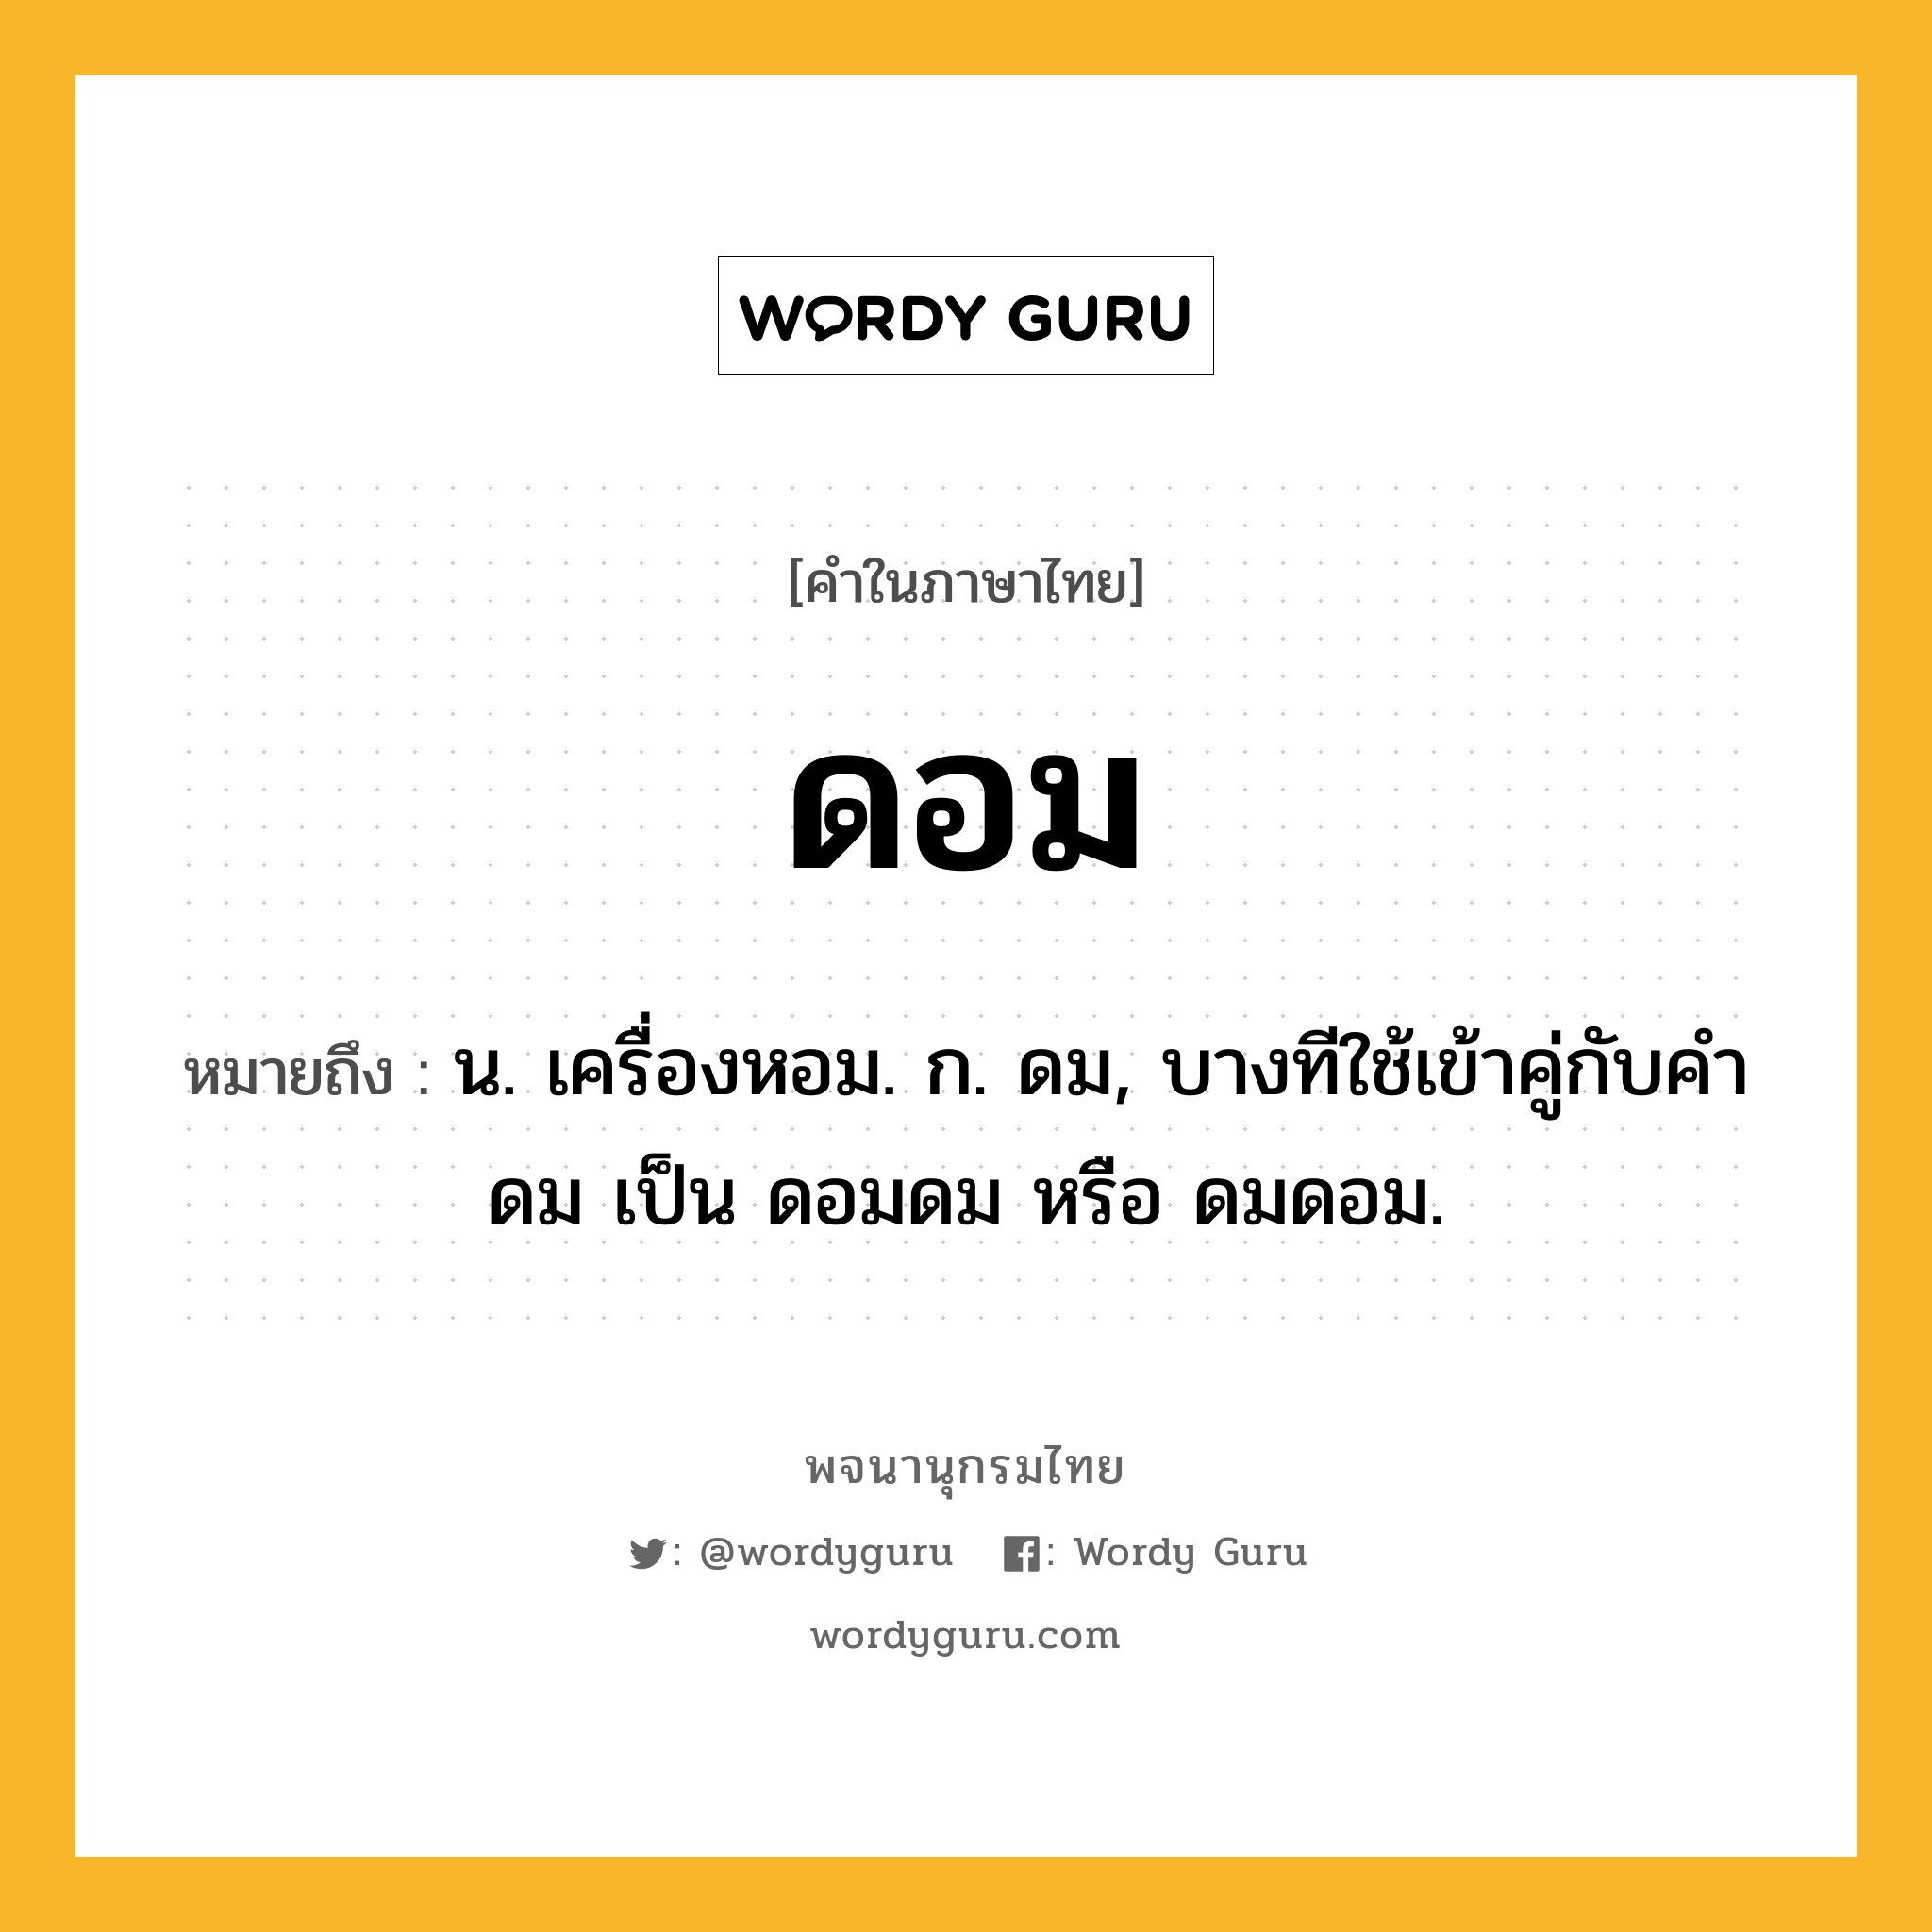 ดอม หมายถึงอะไร?, คำในภาษาไทย ดอม หมายถึง น. เครื่องหอม. ก. ดม, บางทีใช้เข้าคู่กับคำ ดม เป็น ดอมดม หรือ ดมดอม.